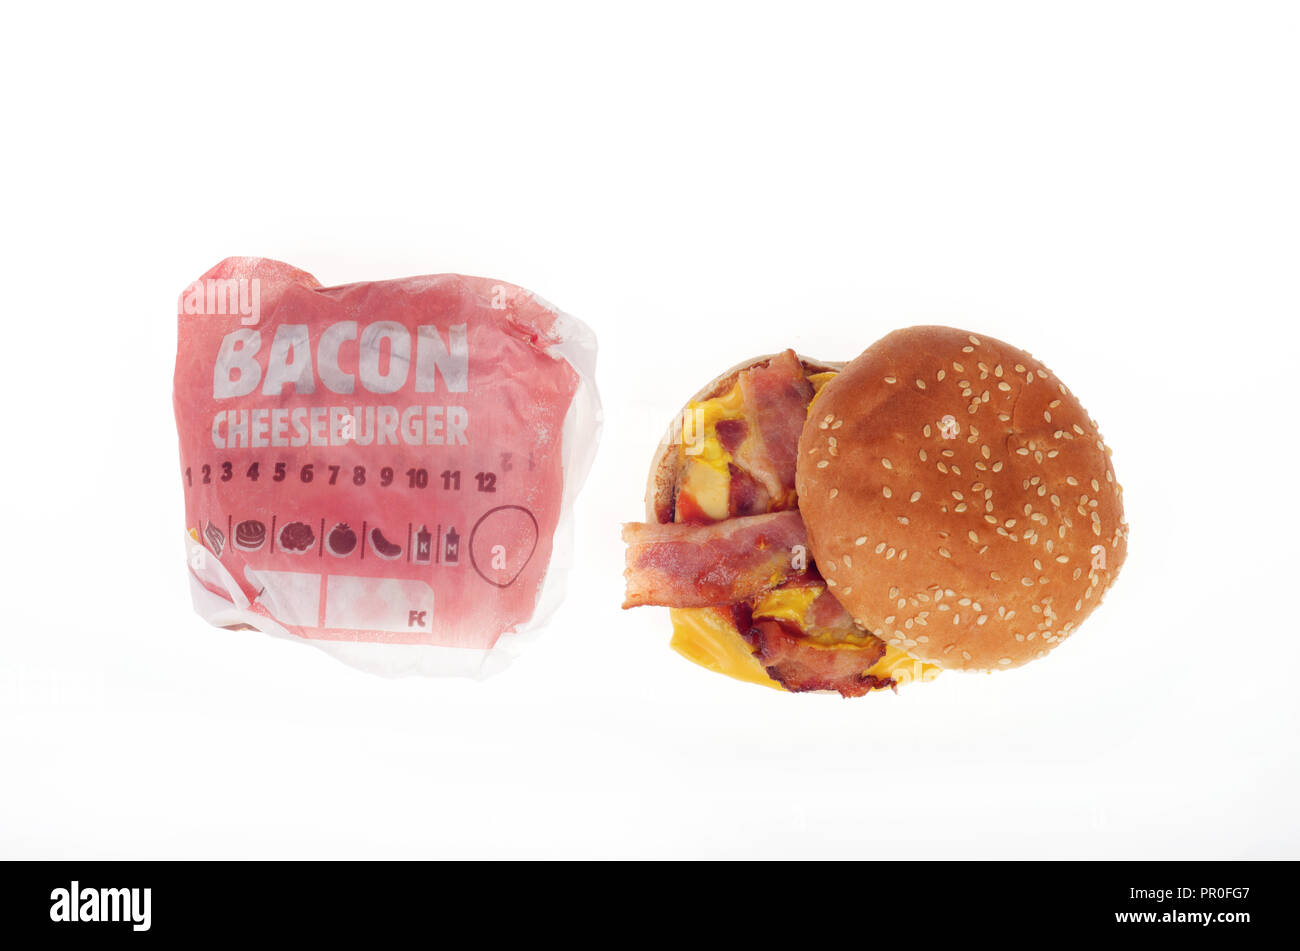 2 Burger King Bacon cheeseburger uno aperto e 1 in involucro su sfondo bianco Foto Stock